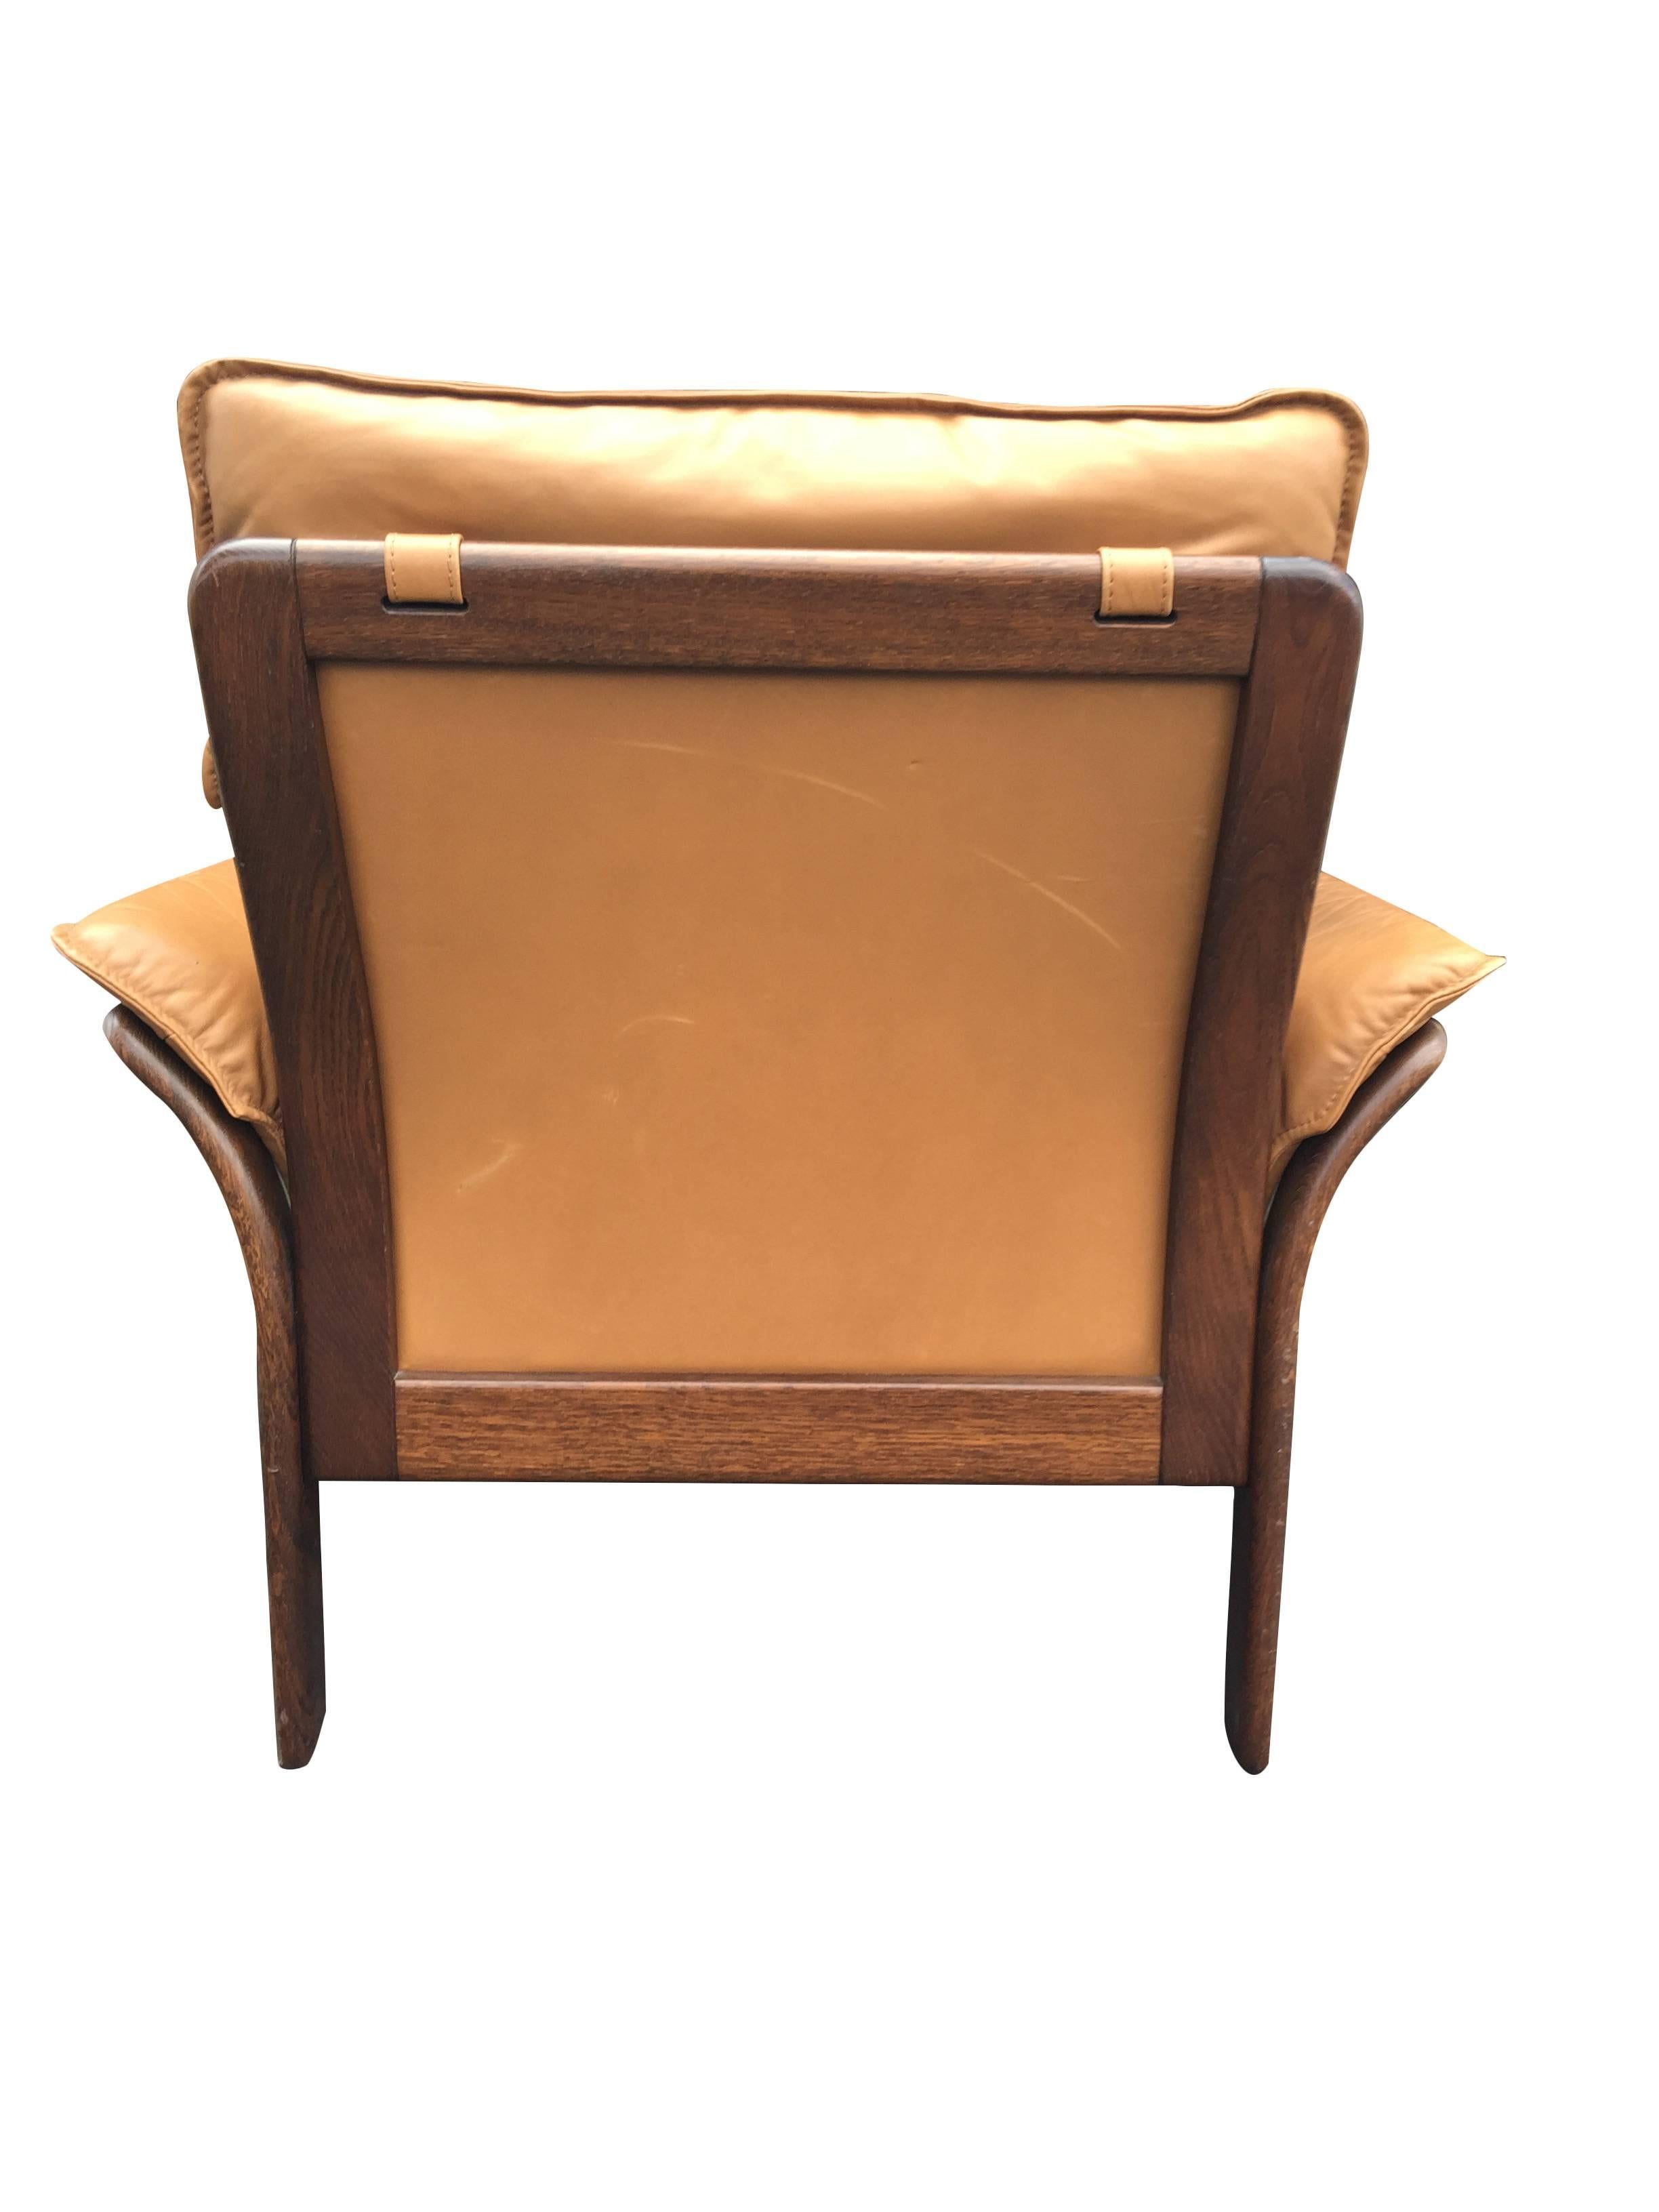 Scandinavian Modern 1970s Camel Leather and Rosewood Scandinavian Chair